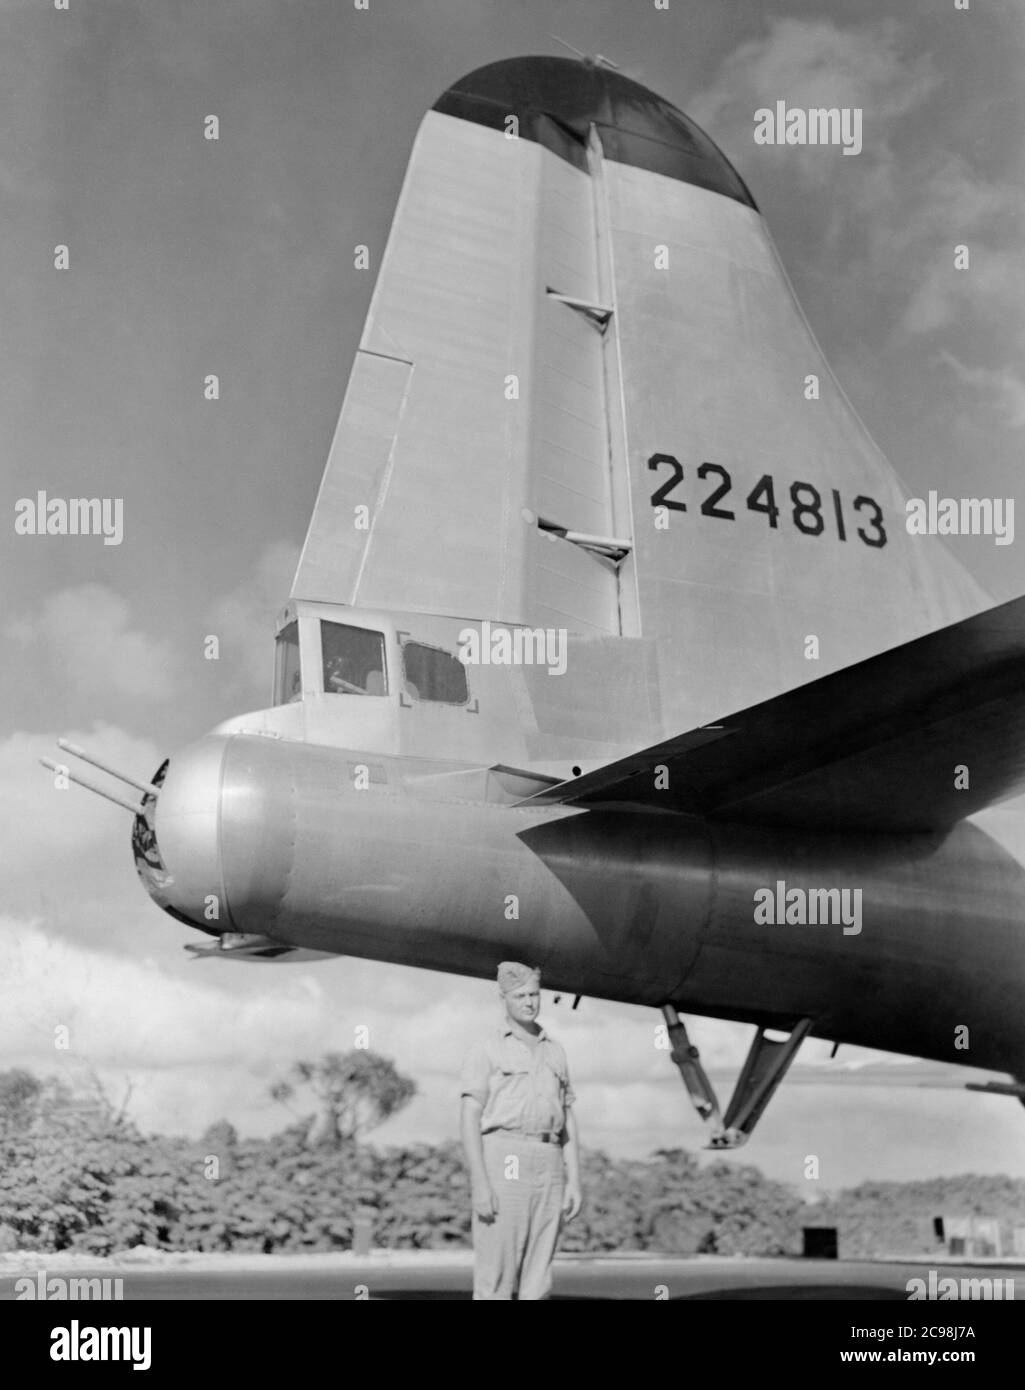 Boeing B-29 Superfortress 224813 auf der Fluglinie. Northfield, Guam, Juli 1945. Zum 75. Jahrestag des V-J Day hat die Consoli Collection vier Fotoessays von U.S. Navy LT. (j.g.) veröffentlicht. Joseph J. Consoli. Die Fotos wurden zwischen Juli und Dezember 1945 auf den Marianen aufgenommen. Sie dokumentieren das Leben der US-Marine vor und nach der japanischen Kapitulation. Stockfoto